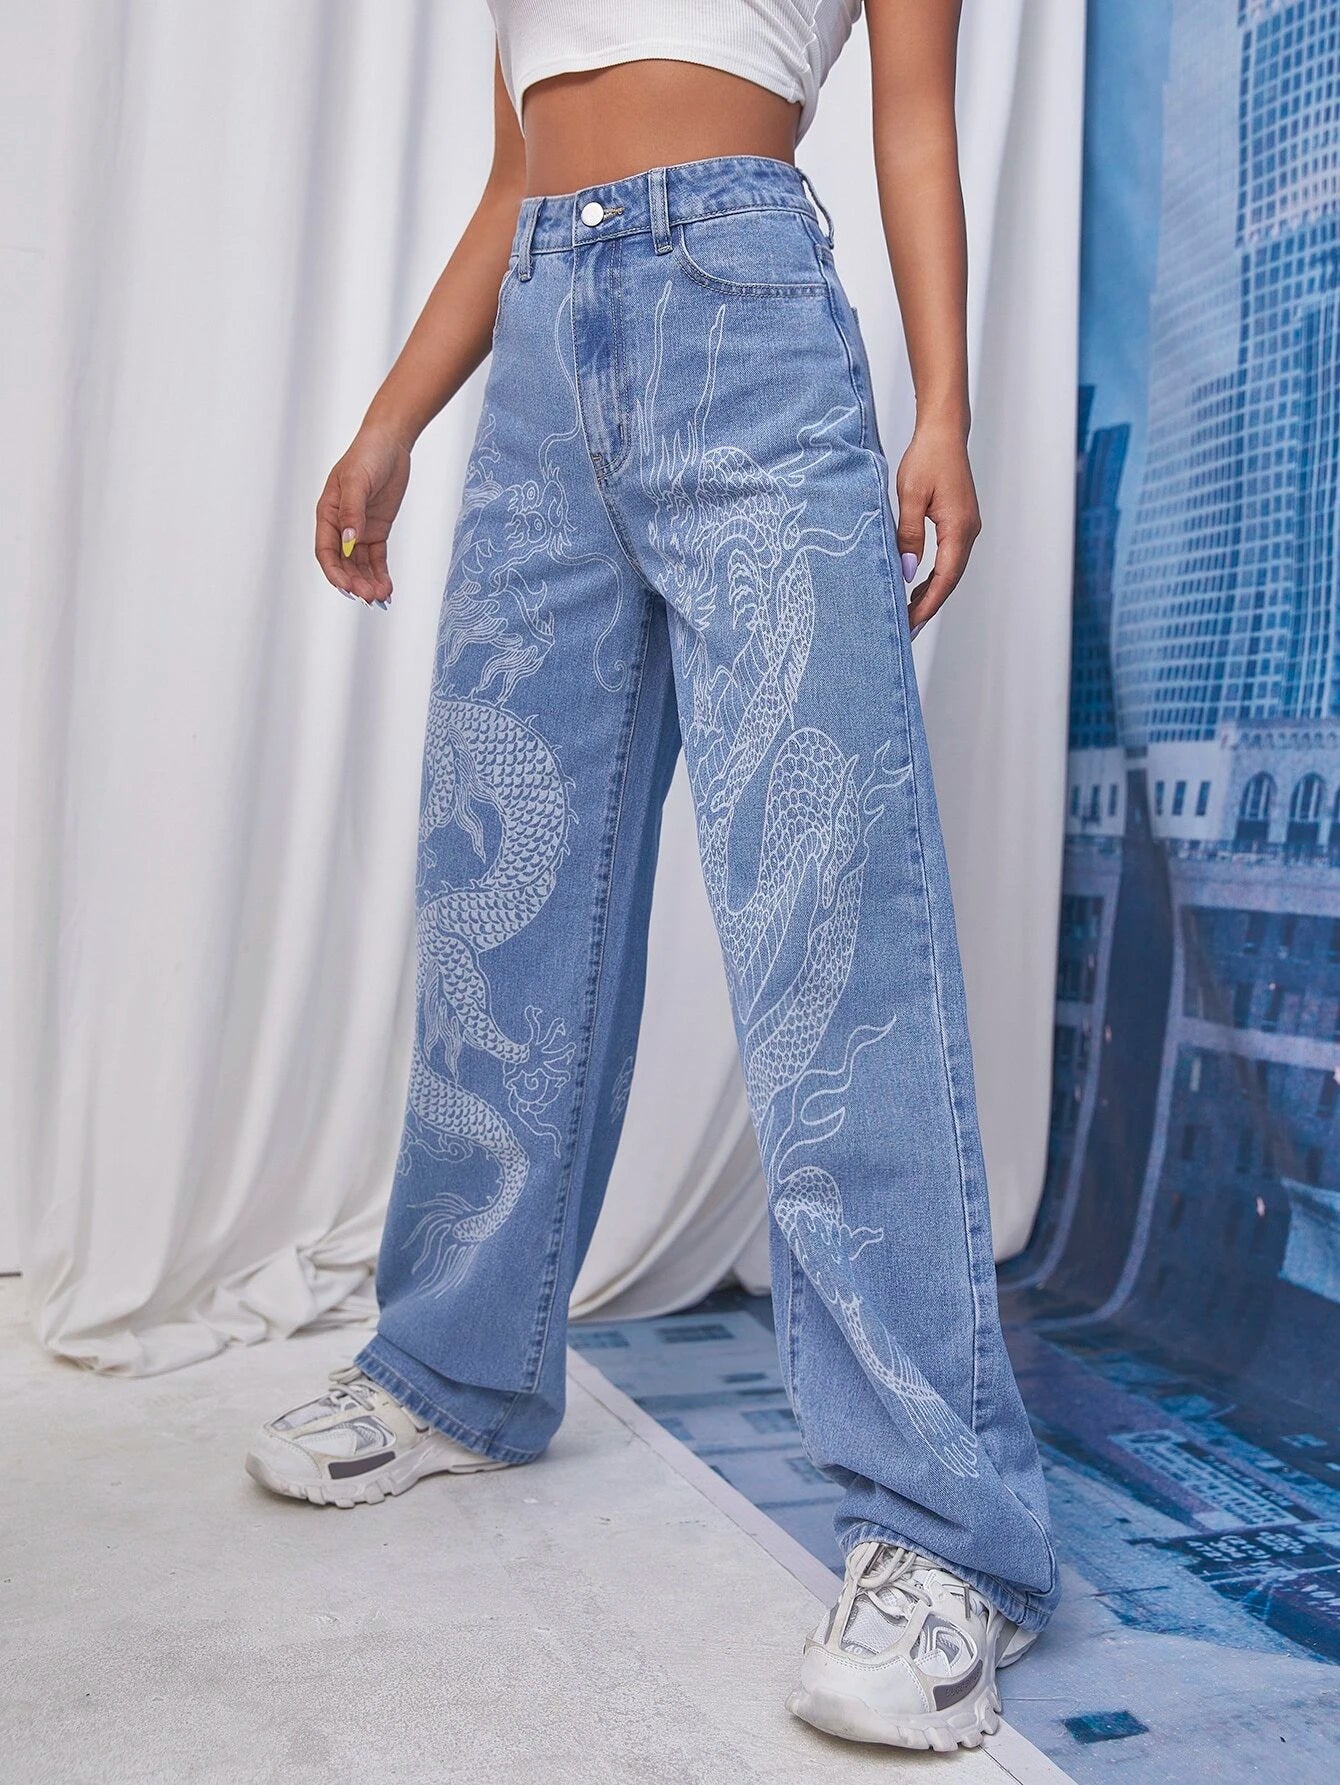 Jeans Slogan E Impressão Yin e Yang  Printed jeans, Women denim jeans,  Women jeans